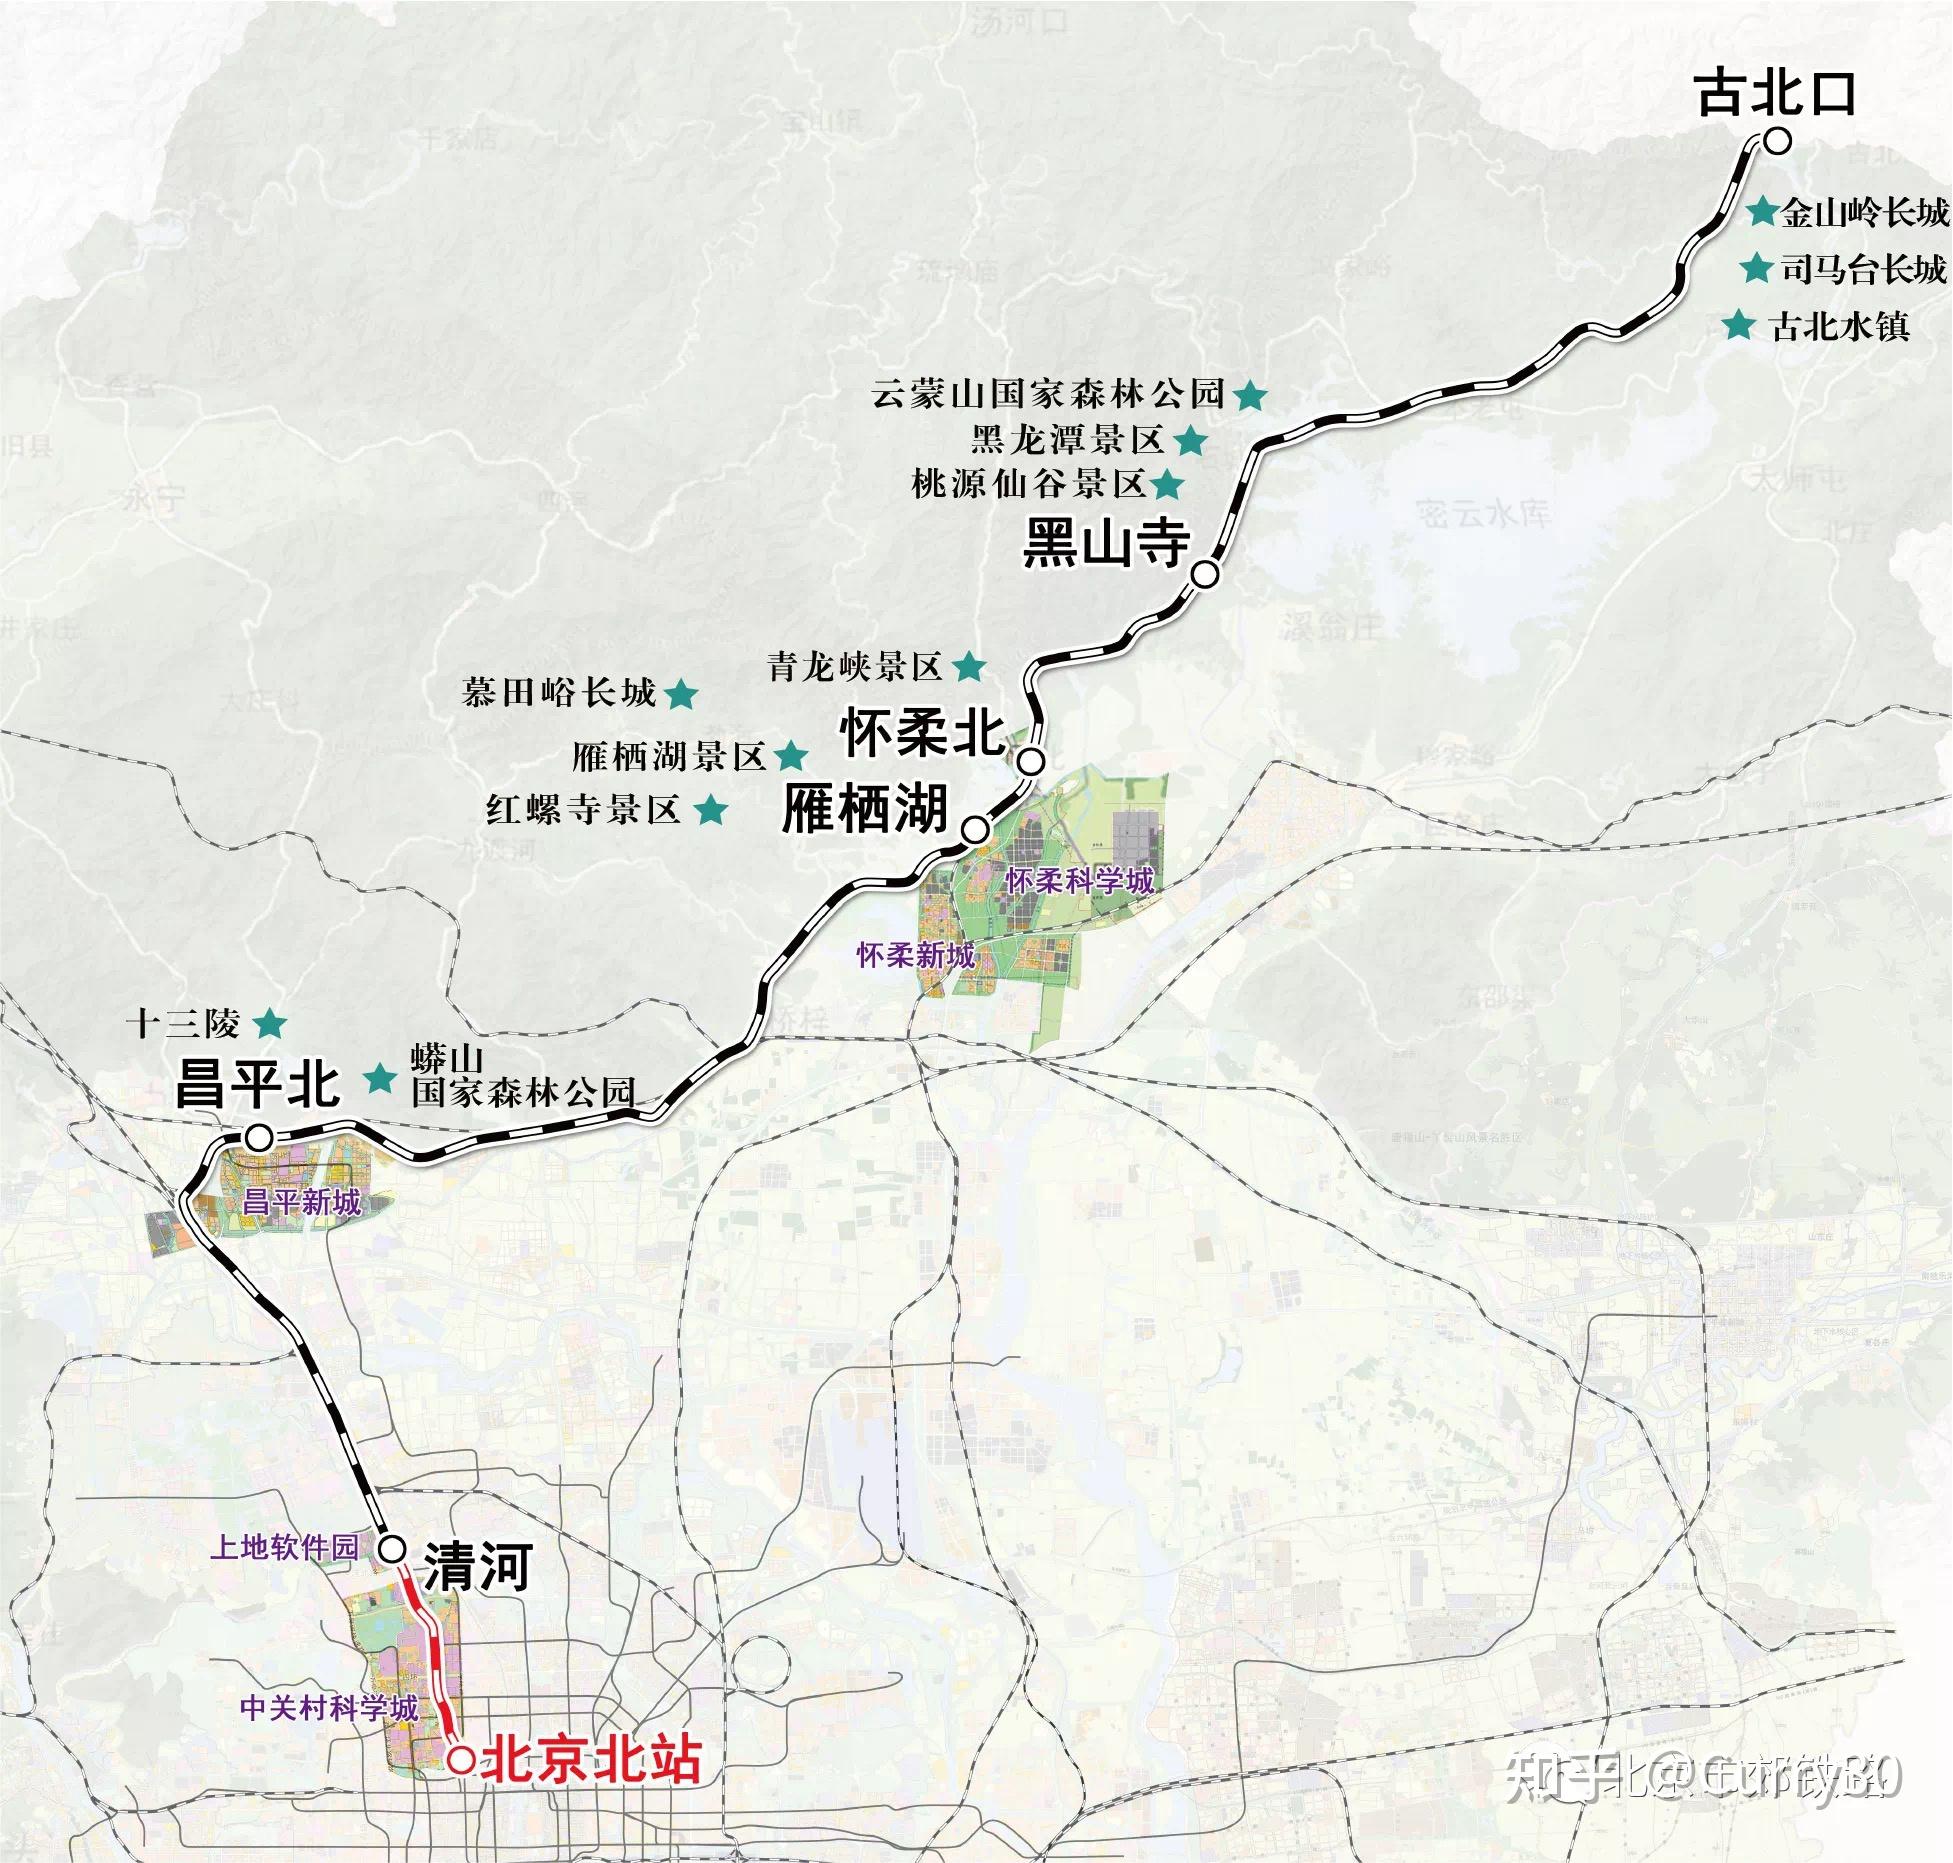 粉粉嫩嫩怀密号——体验北京市郊铁路s5线 